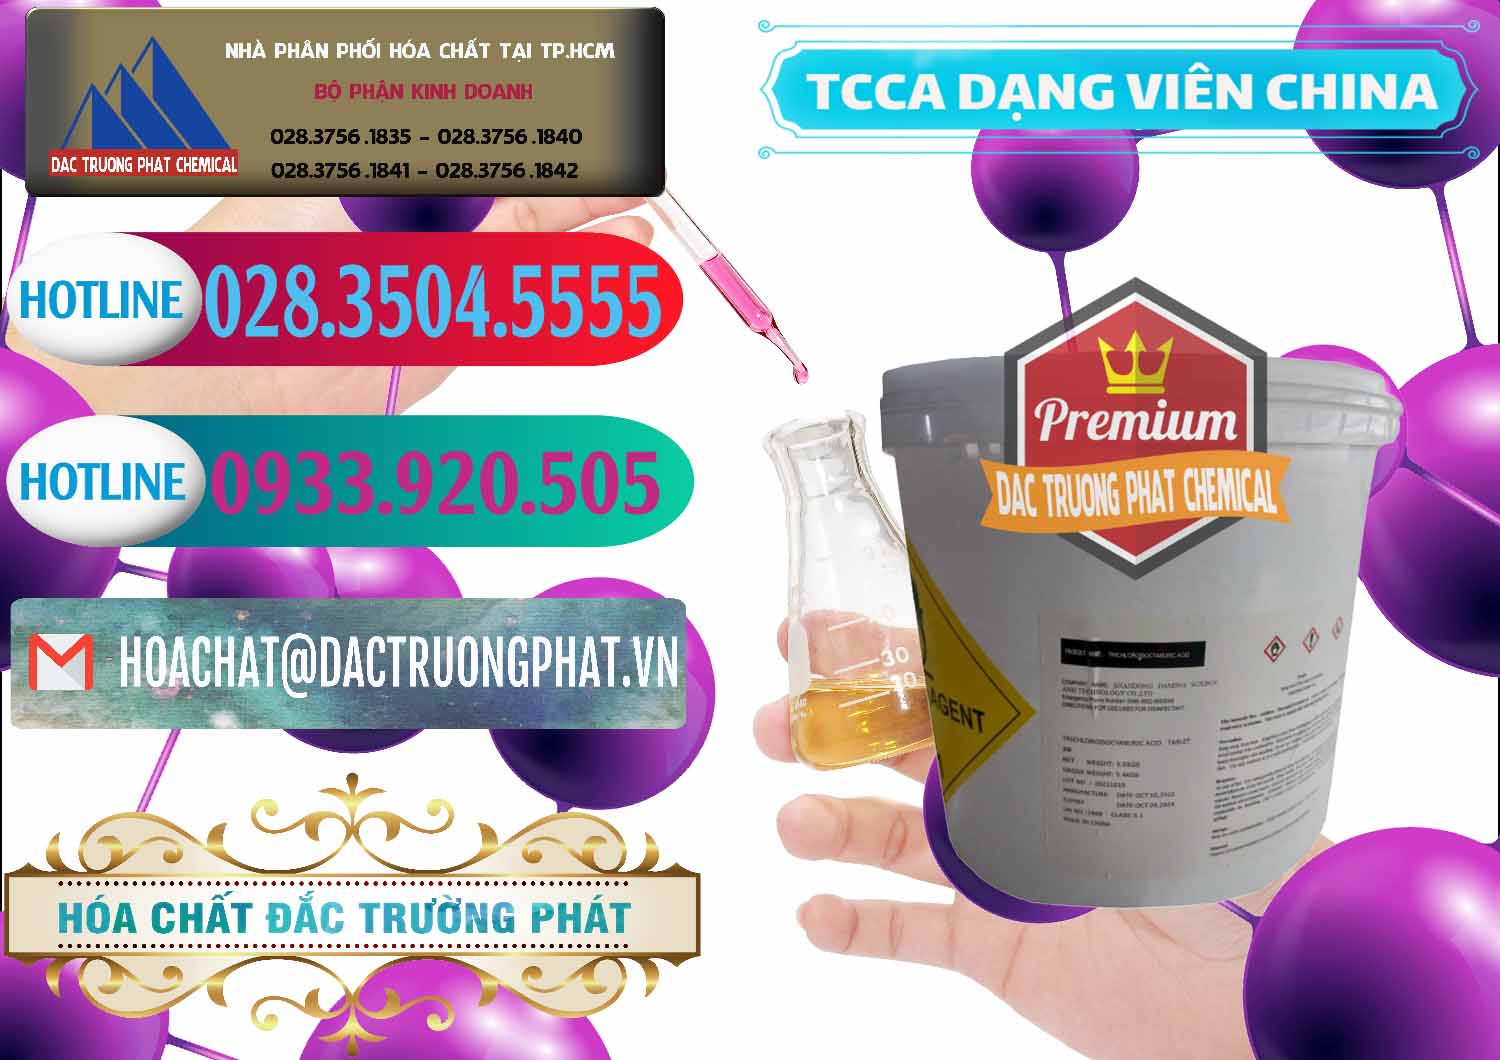 Công ty chuyên bán và cung ứng TCCA - Acid Trichloroisocyanuric Dạng Viên Thùng 5kg Trung Quốc China - 0379 - Cty nhập khẩu và phân phối hóa chất tại TP.HCM - truongphat.vn